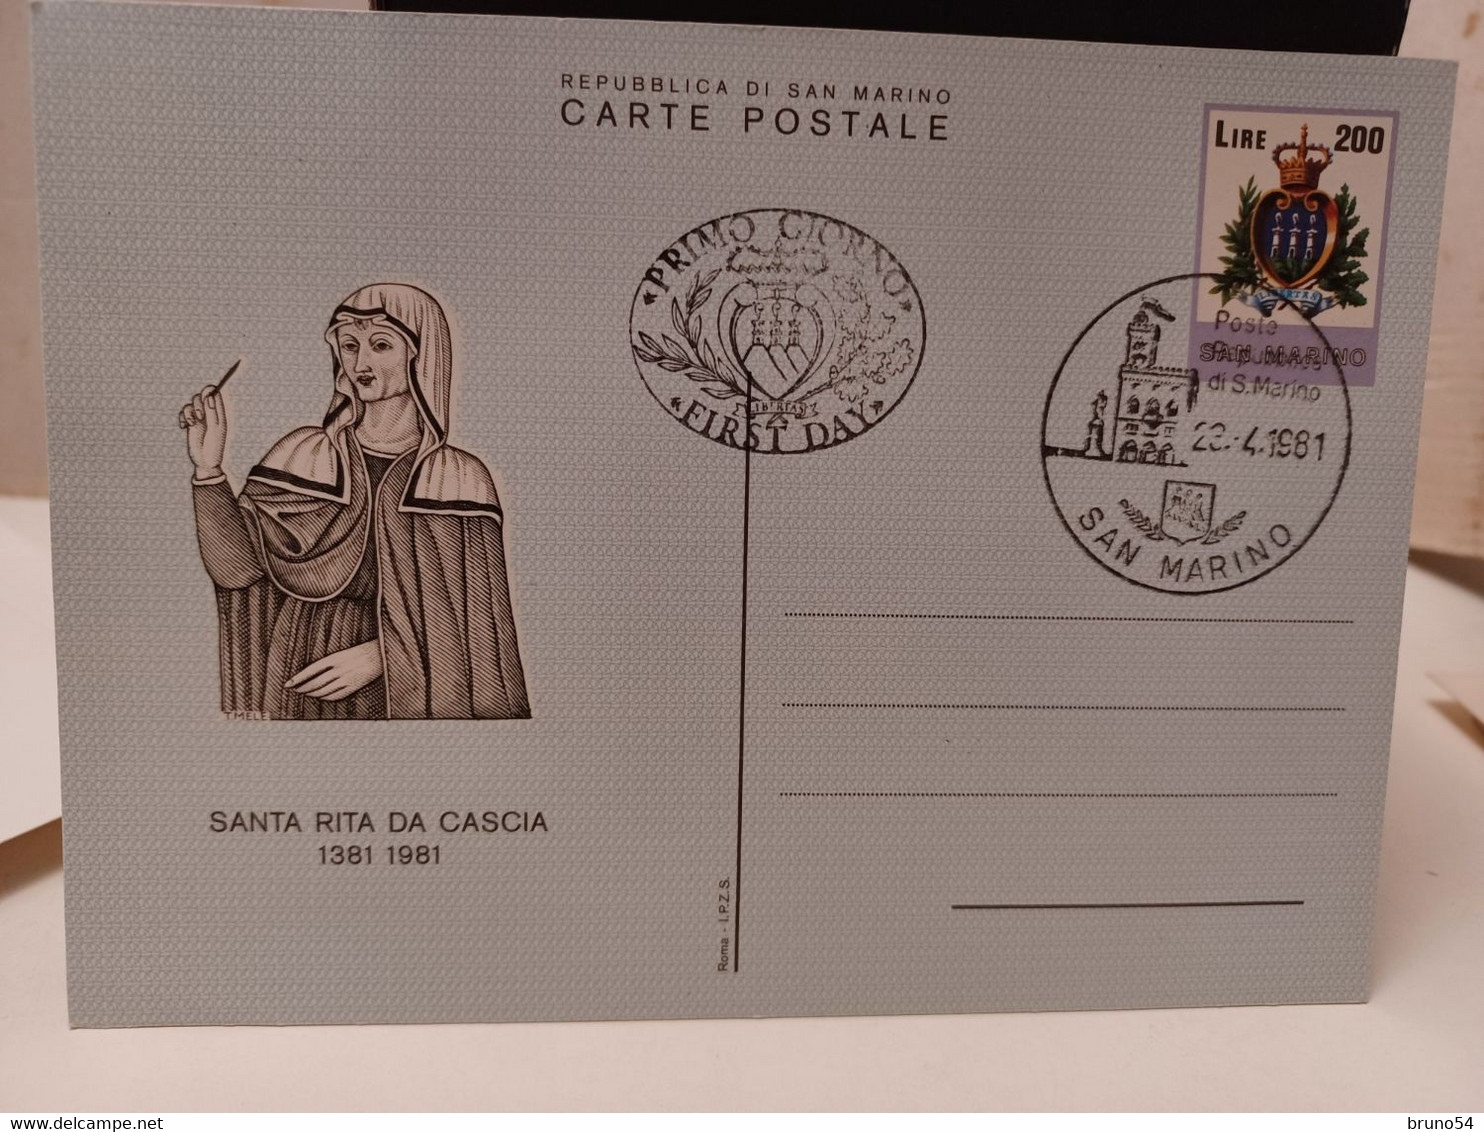 22 interi postali, cartolina postale  San Marino fine anni 70 in poi